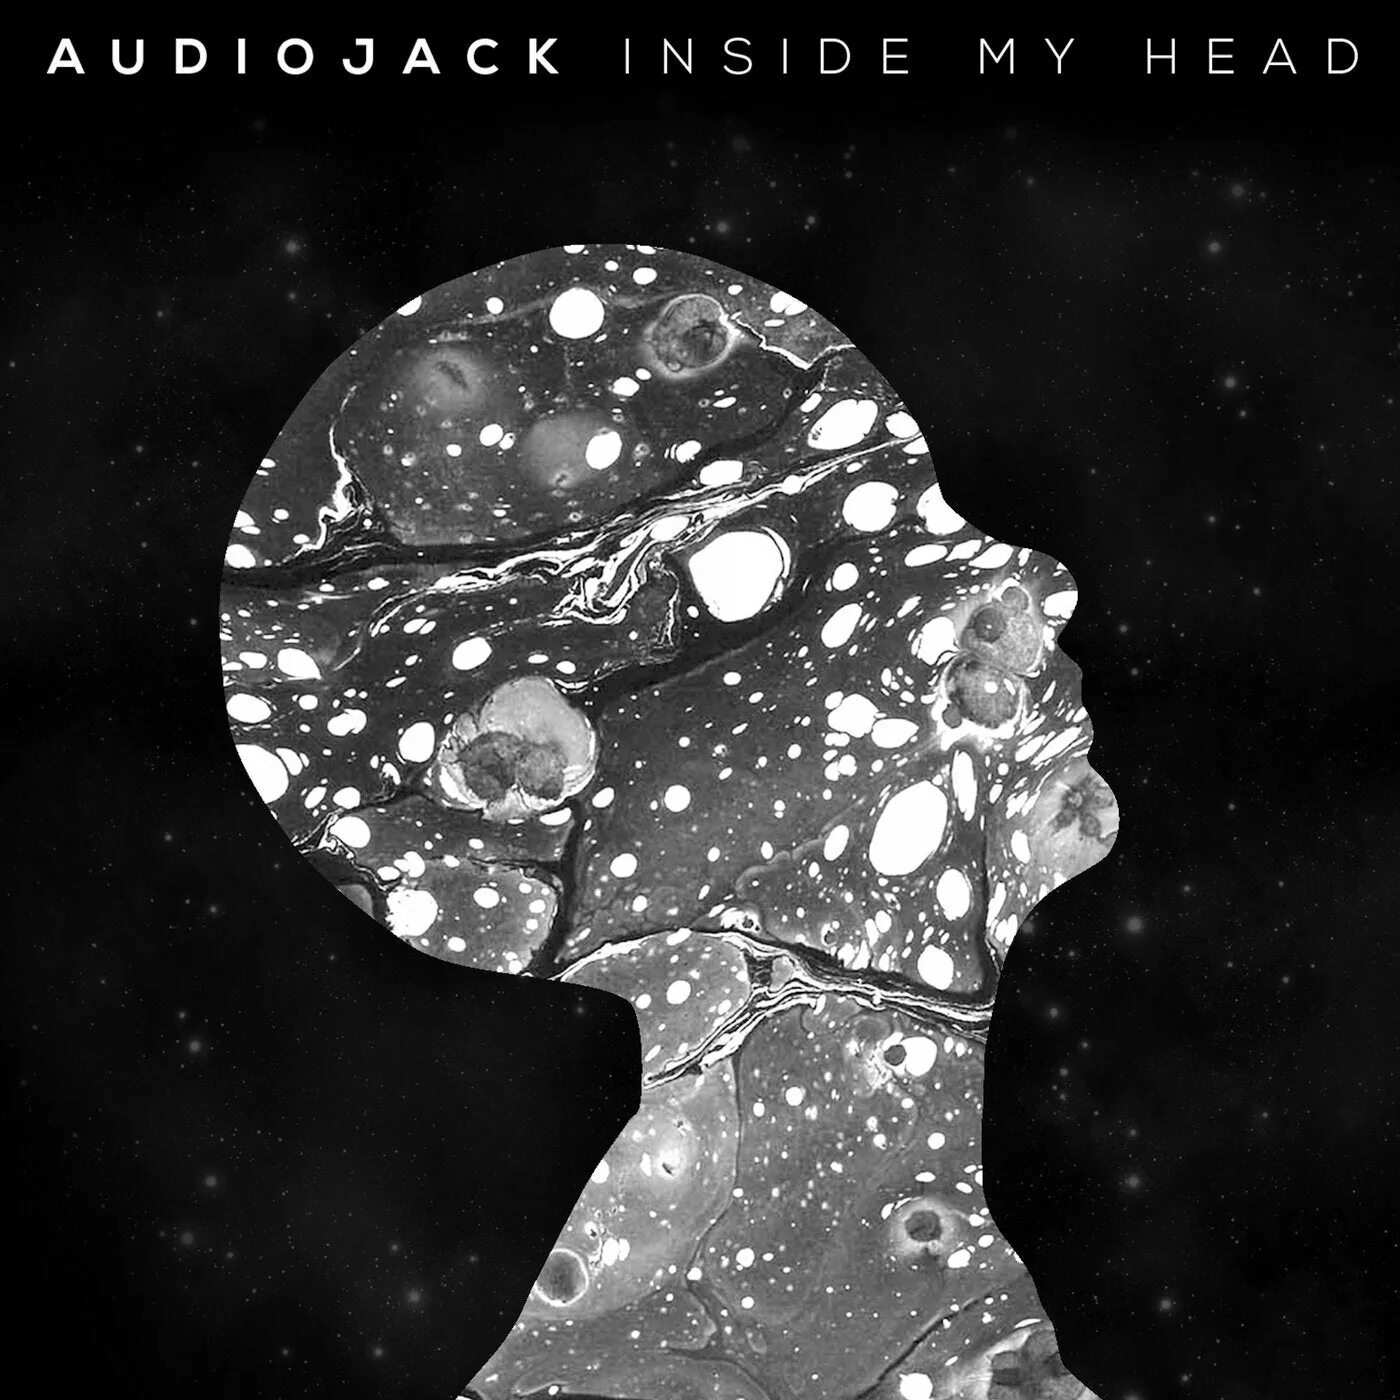 This is my head. My head. Inside my head. Inside my head Radiohead. Inside in my head.